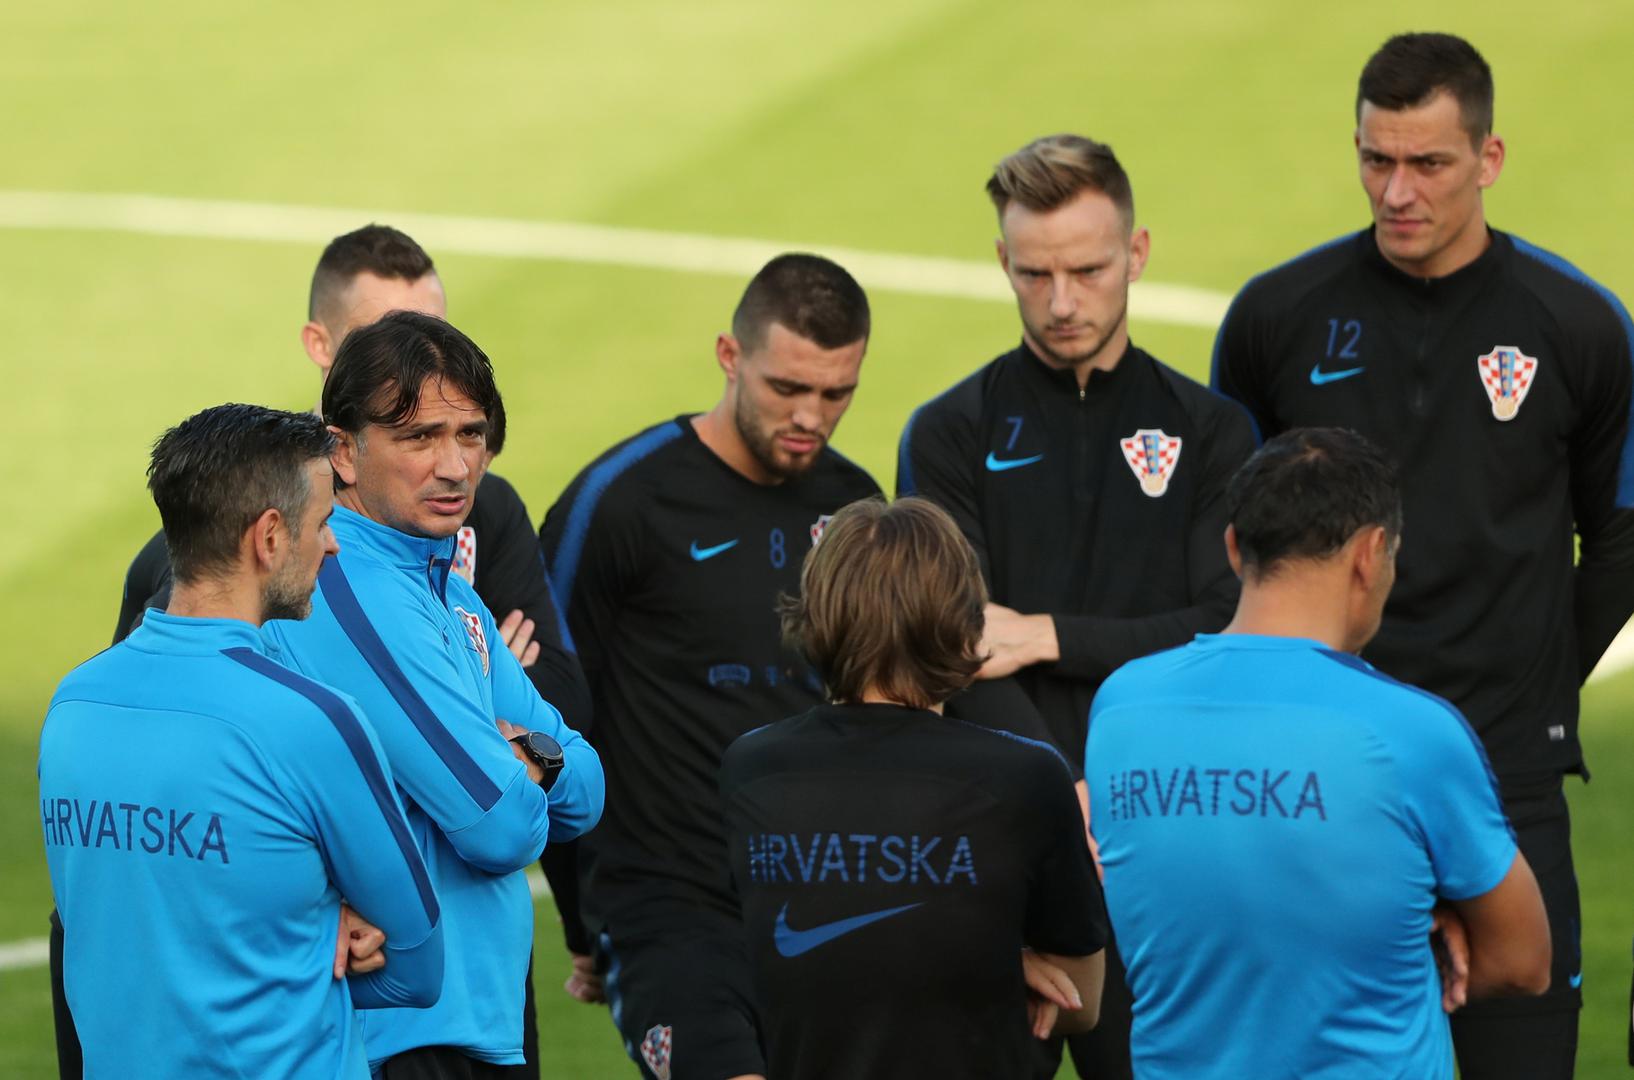 U petak je Hrvatska odradila prvi pravi trening nakon velike pobjede 2:1 protiv Engleske i plasmana u finale Svjetskog prvenstva.

